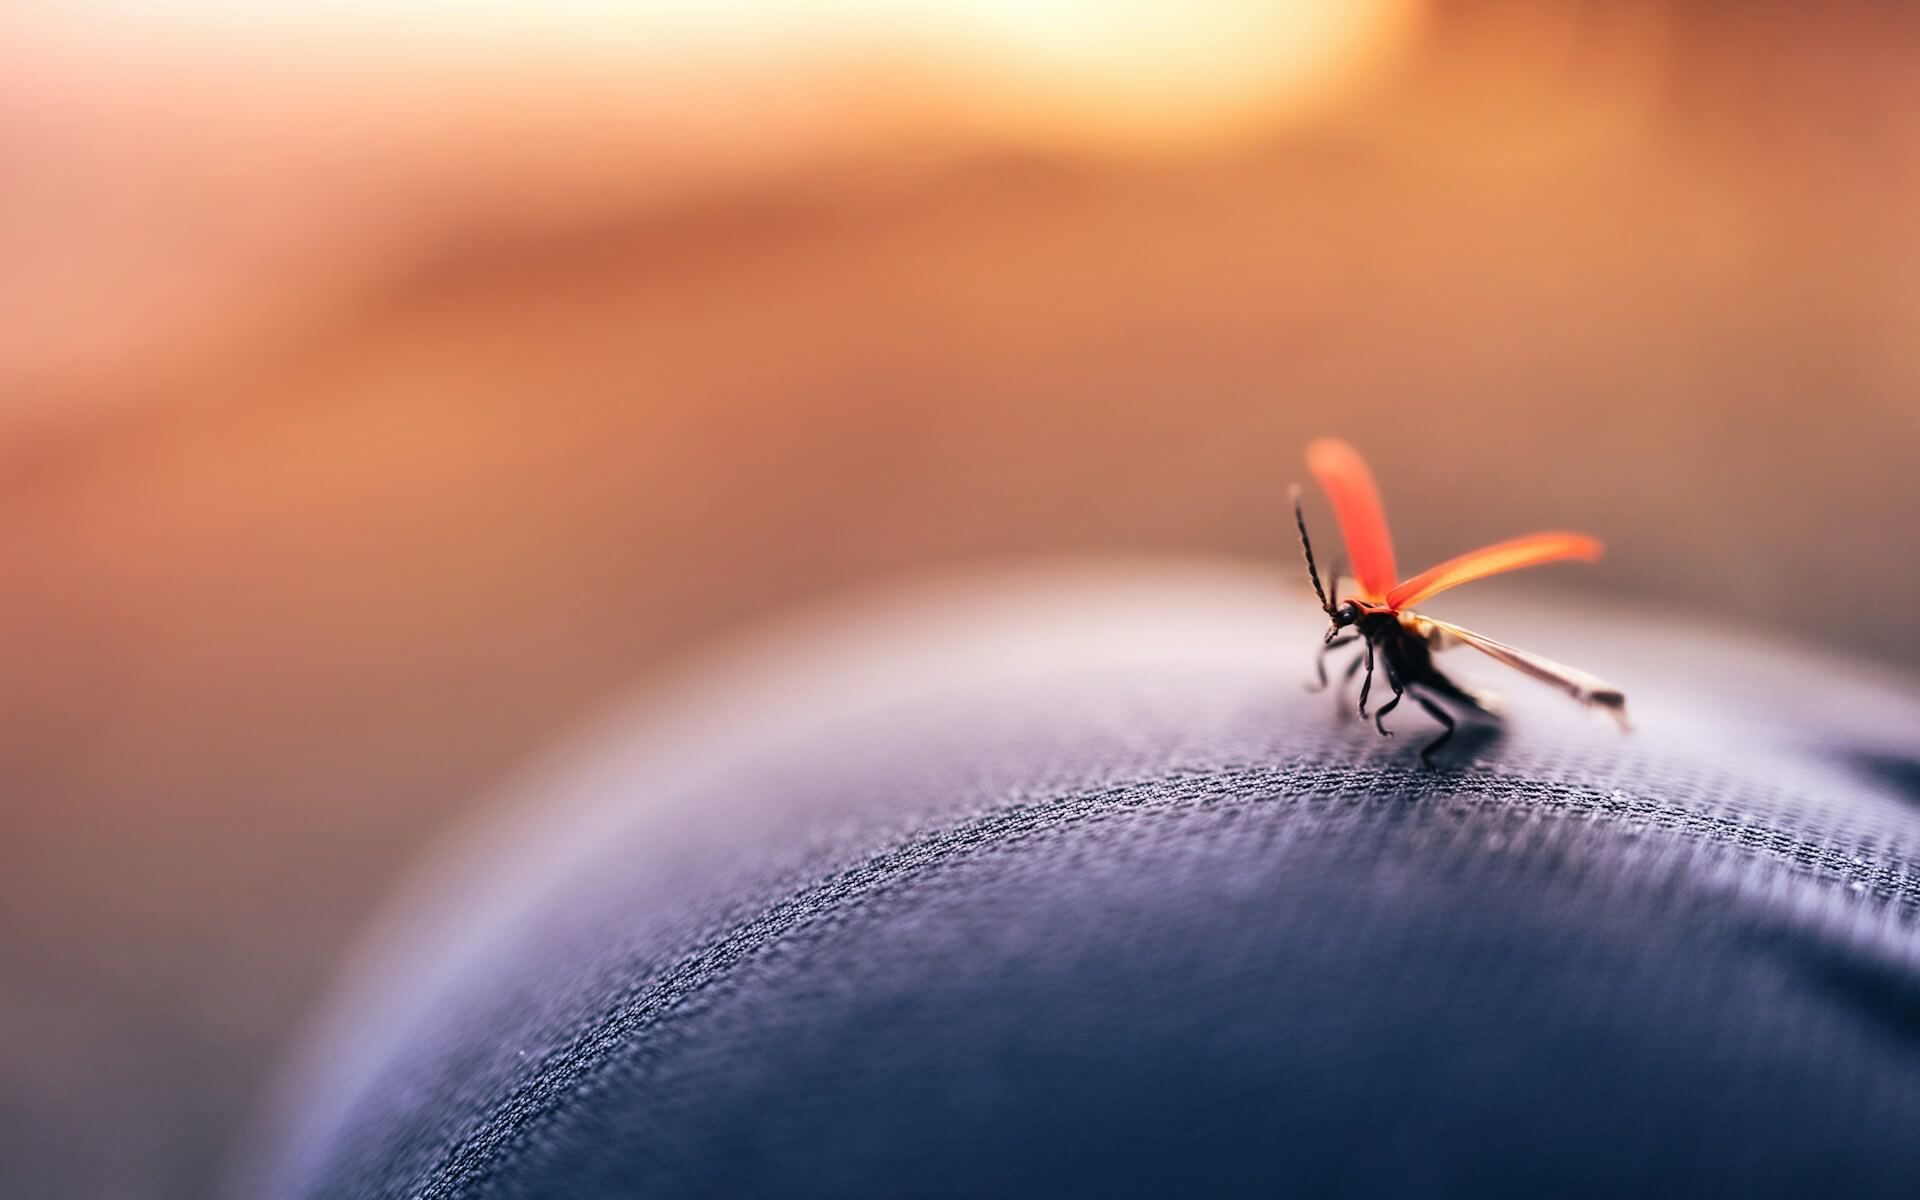 Globalne ocieplenie sprzyja komarom. Warto się chronić title